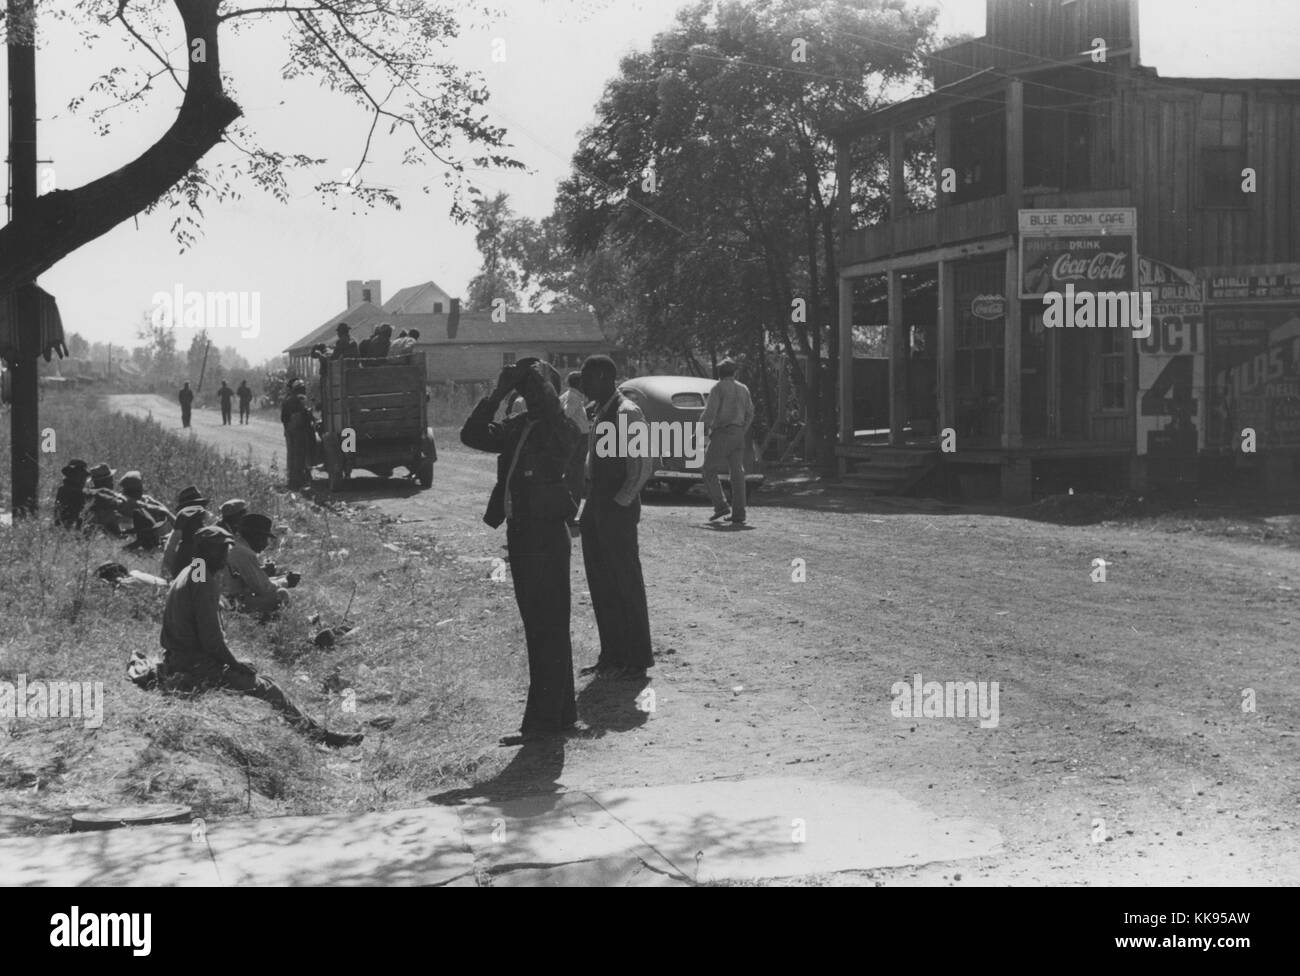 Schwarz-weiß Fotografie afroamerikanische Männer an der Seite eines Feldweg ruhend, Autos auf der Straße, kleine Unternehmen im Hintergrund, Belzoni, Mississippi, November, 1939. Von der New York Public Library. Stockfoto